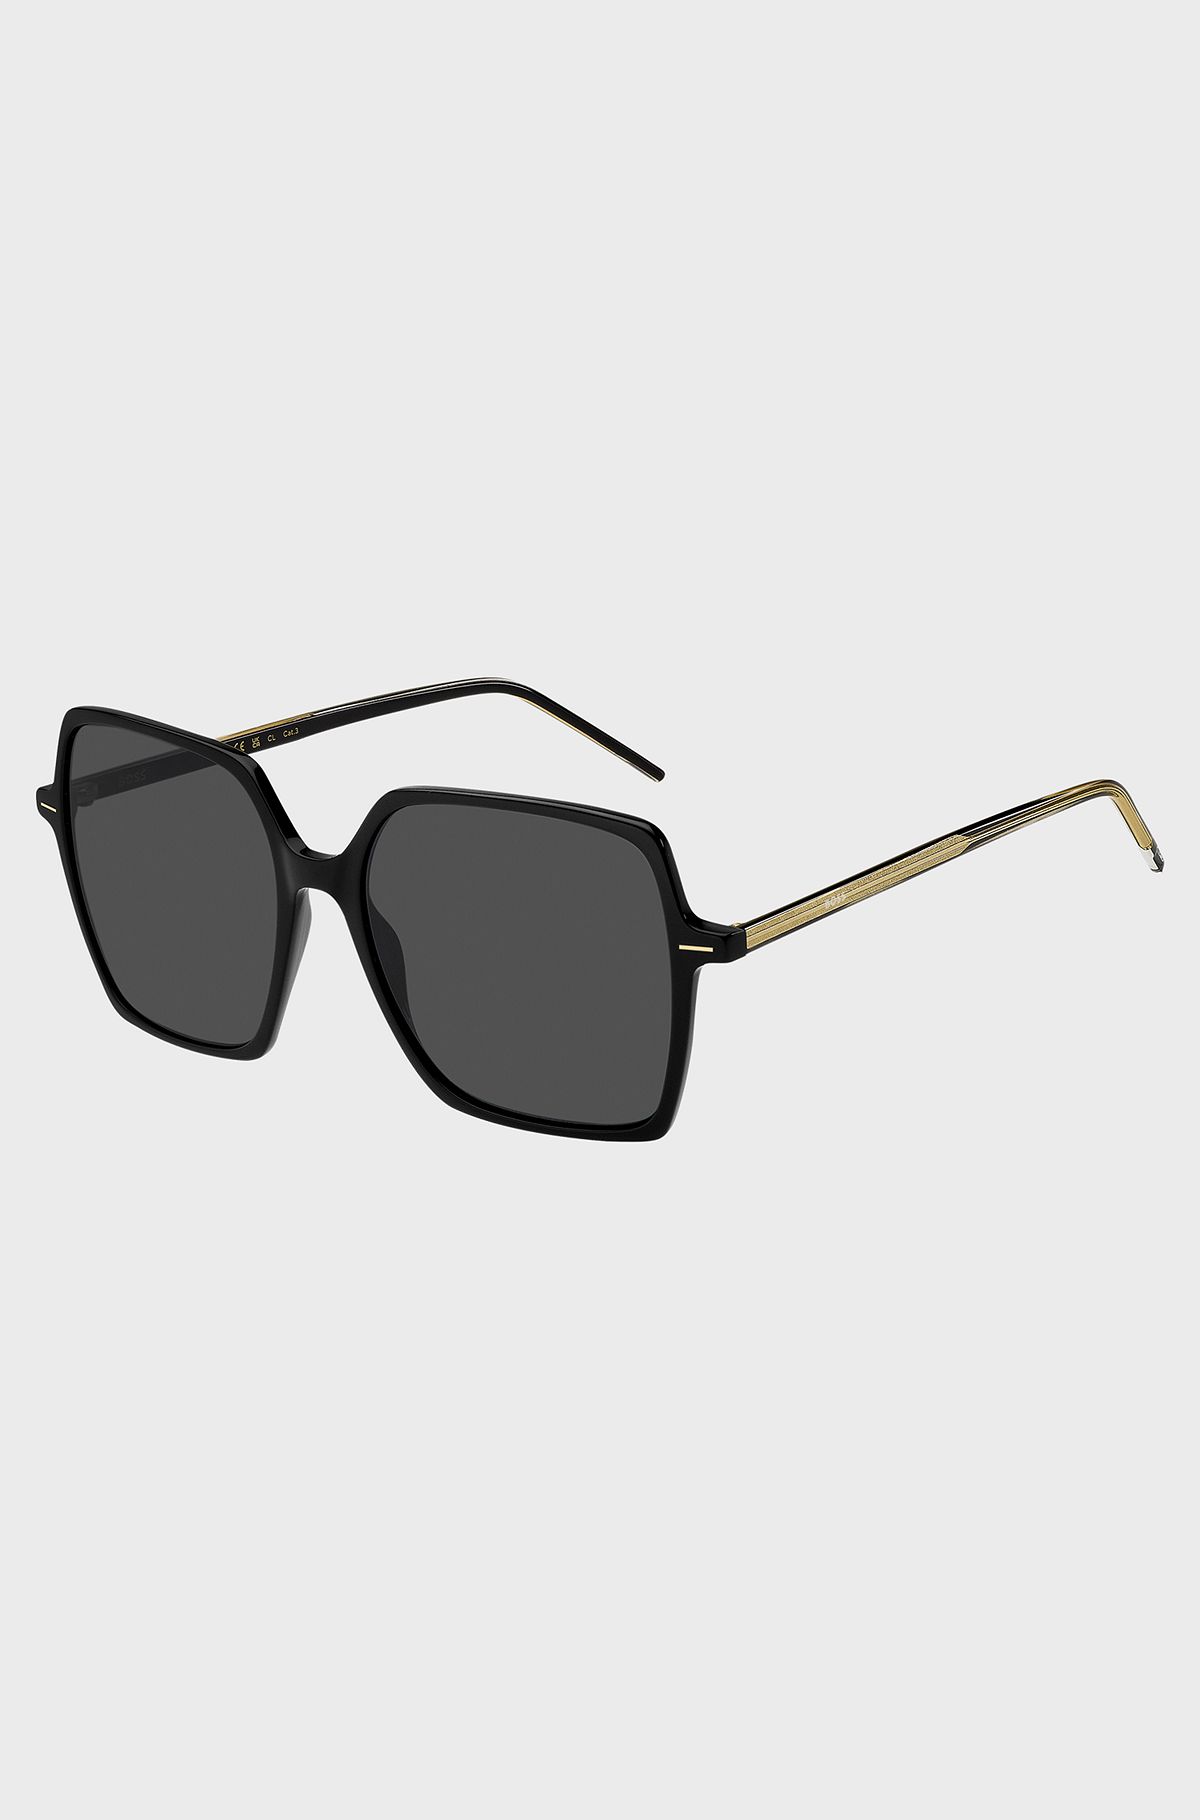 Black-acetate sunglasses with striped core wire, Black